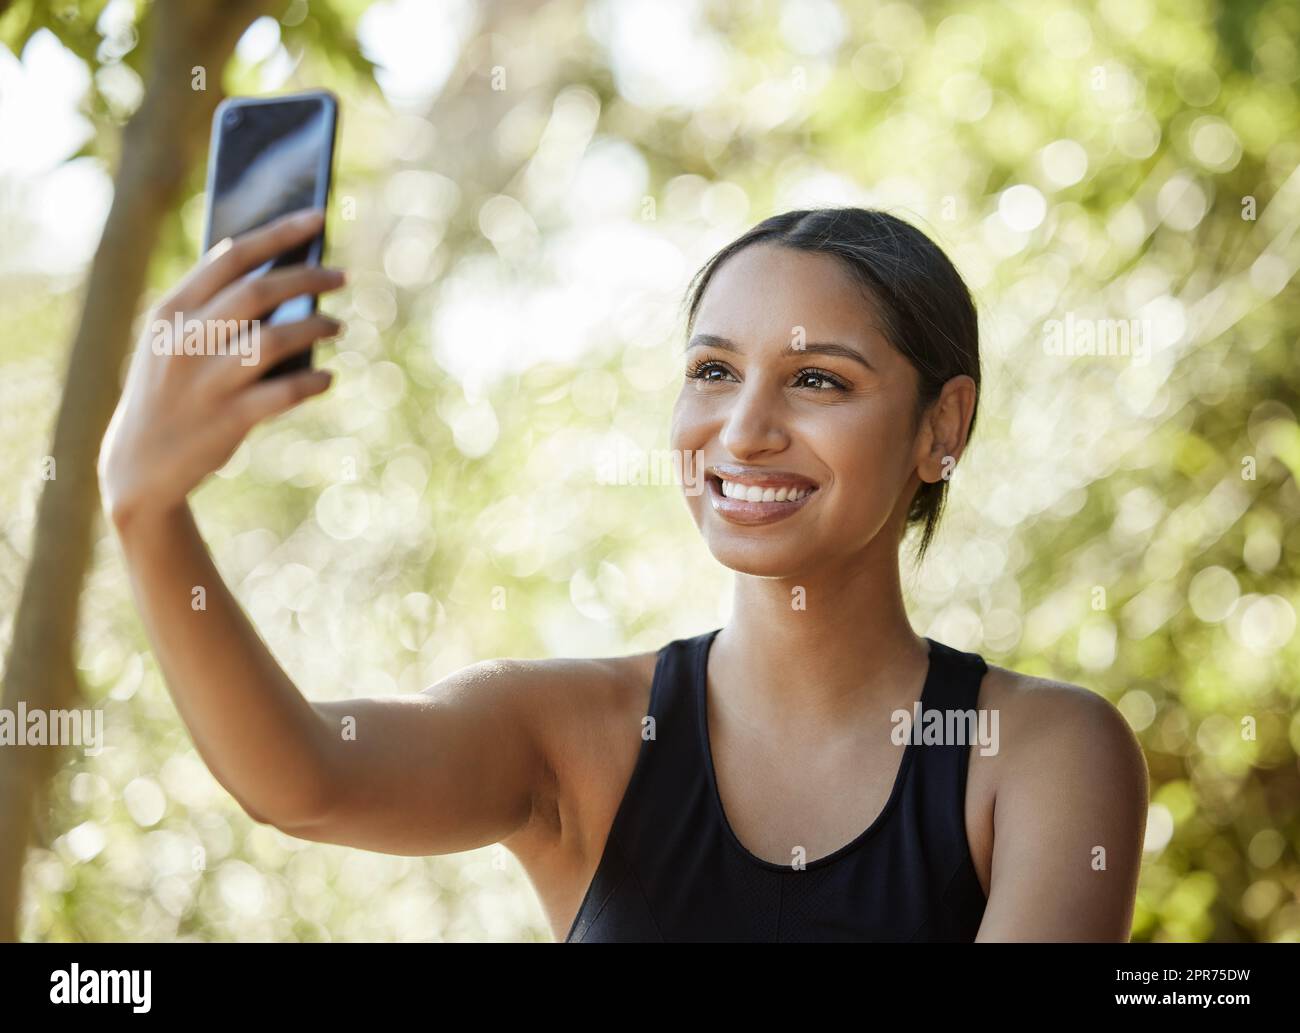 Selfies während des Trainings. Eine kurze Aufnahme einer attraktiven jungen Sportlerin, die beim Training im Freien Selfies macht. Stockfoto